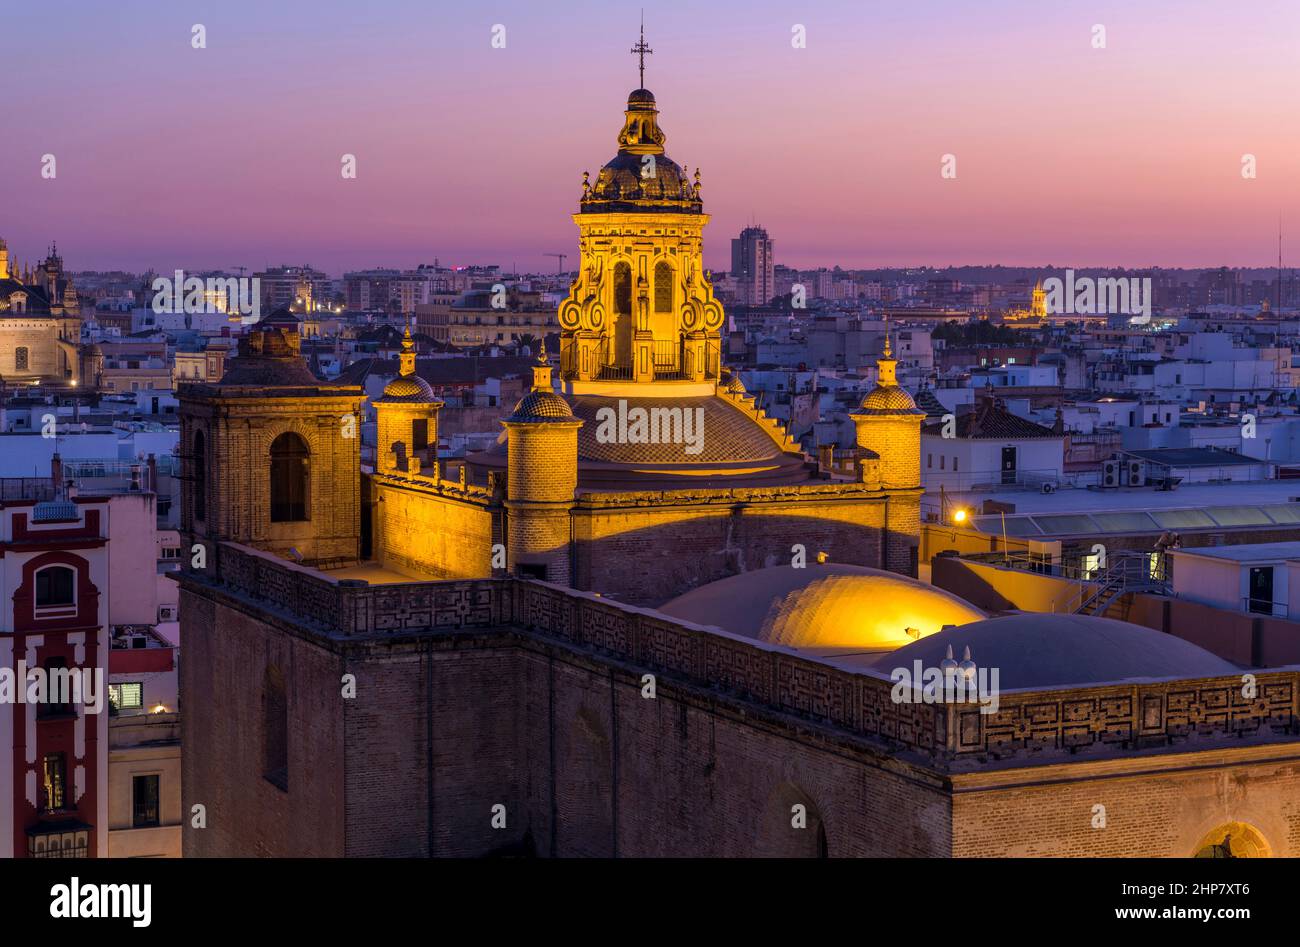 Golden Dome - Blick in die Abenddämmerung auf die beleuchtete Kuppel und den Glockenturm auf der Spitze der im Renaissancestil des 16th. Jahrhunderts erbauten Annunciation Church in Sevilla, Spanien. Stockfoto